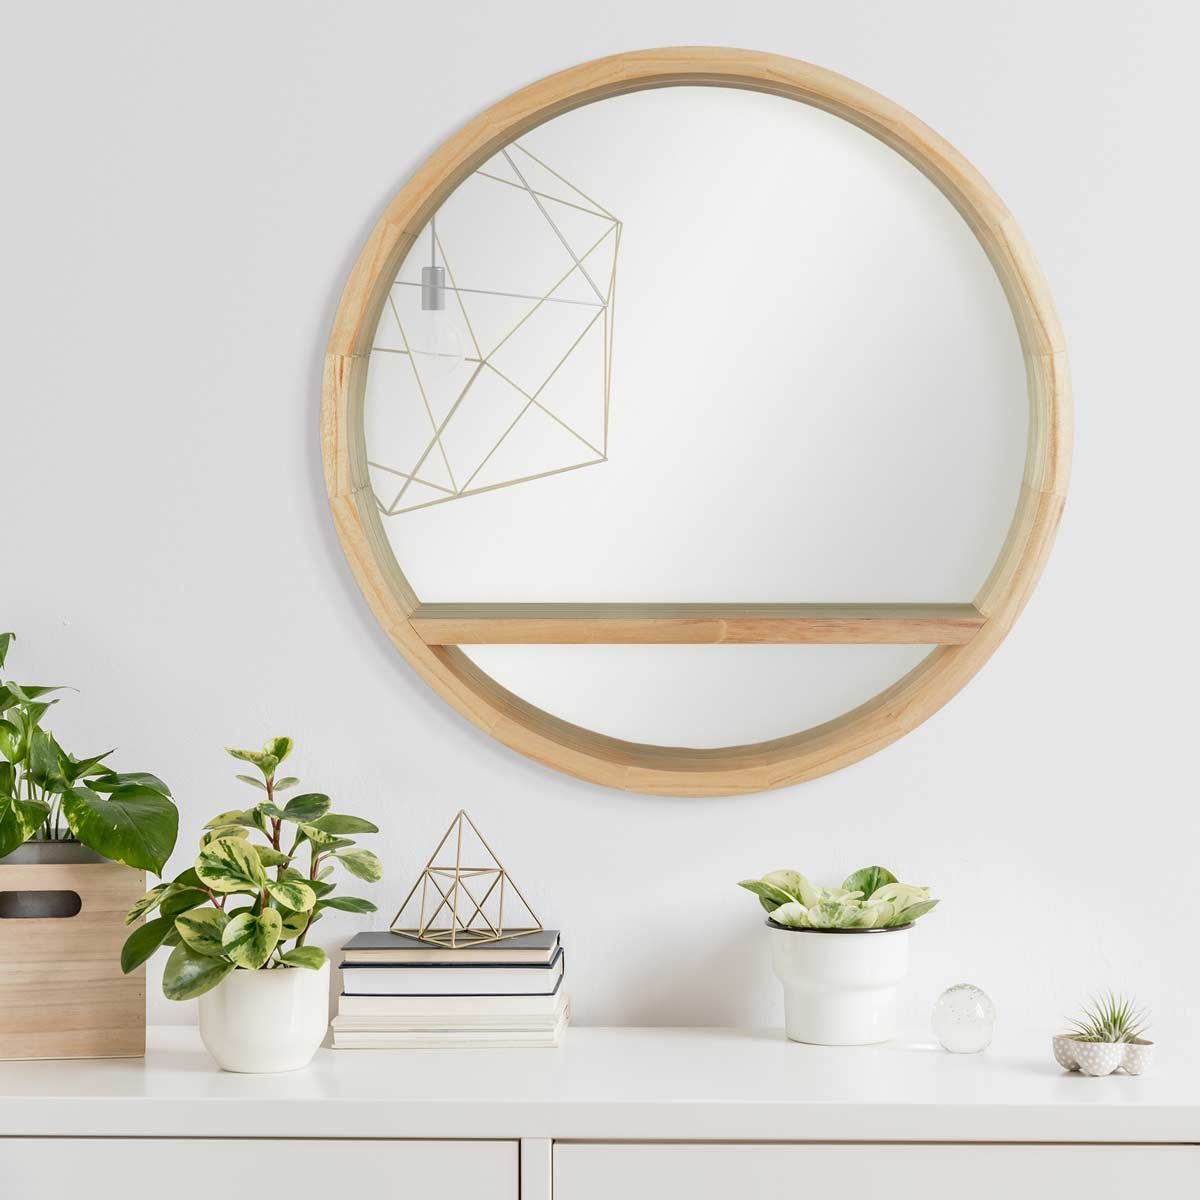 PHOTOLINI Spiegel mit Holzrahmen und praktischer Naturholz Wandspiegel Ablagefläche